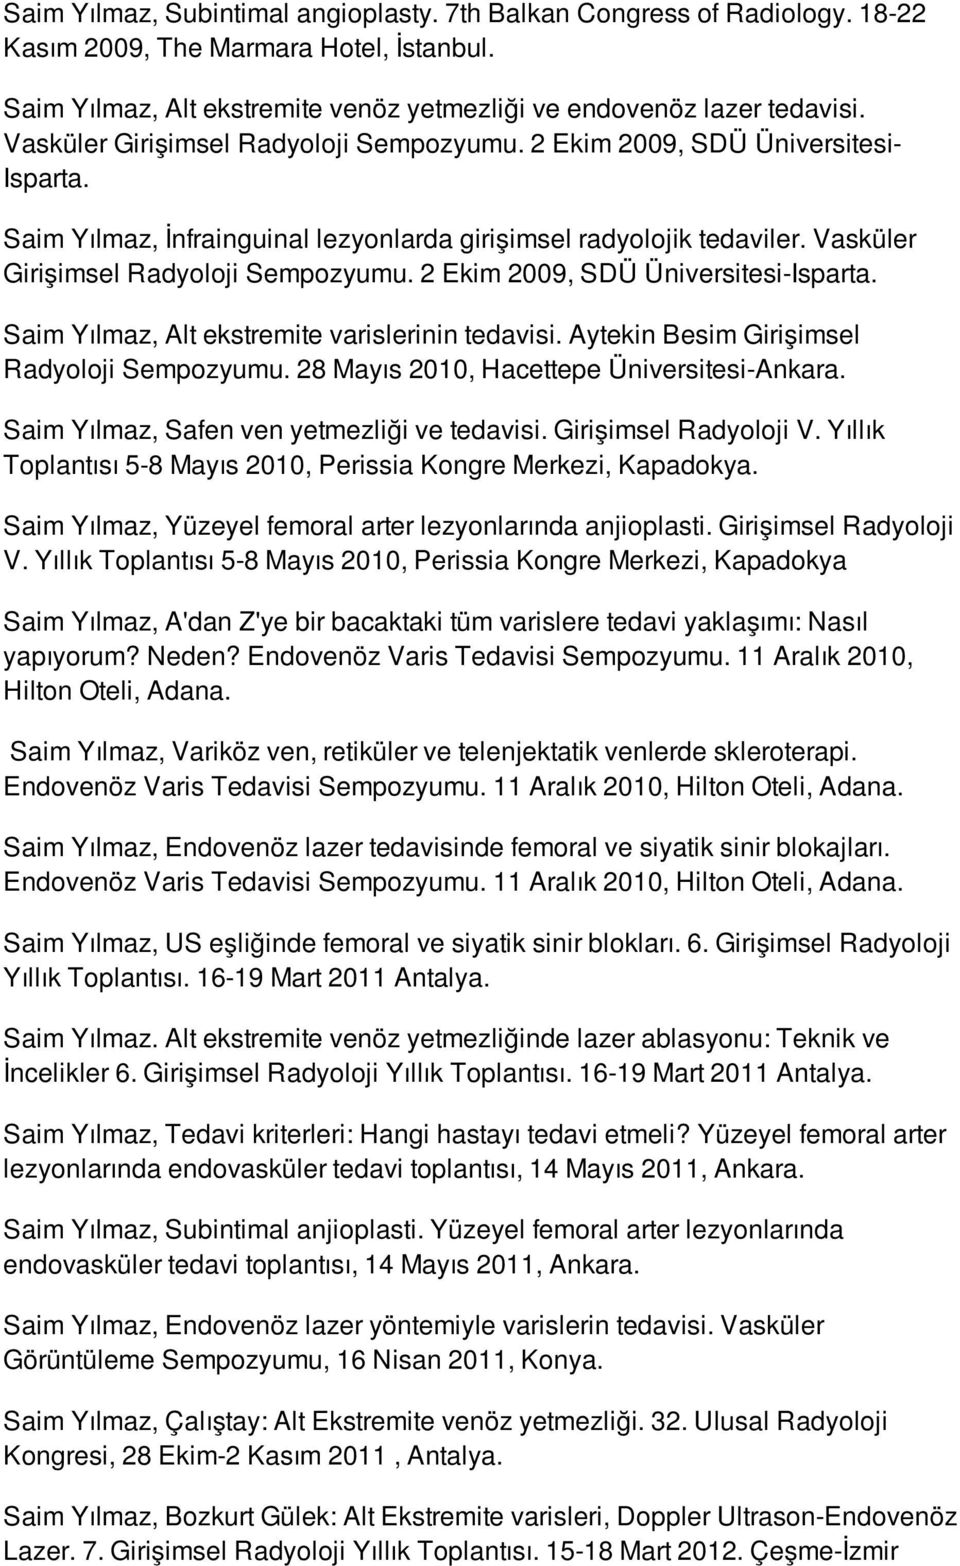 2 Ekim 2009, SDÜ Üniversitesi-Isparta. Saim Yılmaz, Alt ekstremite varislerinin tedavisi. Aytekin Besim Girişimsel Radyoloji Sempozyumu. 28 Mayıs 2010, Hacettepe Üniversitesi-Ankara.